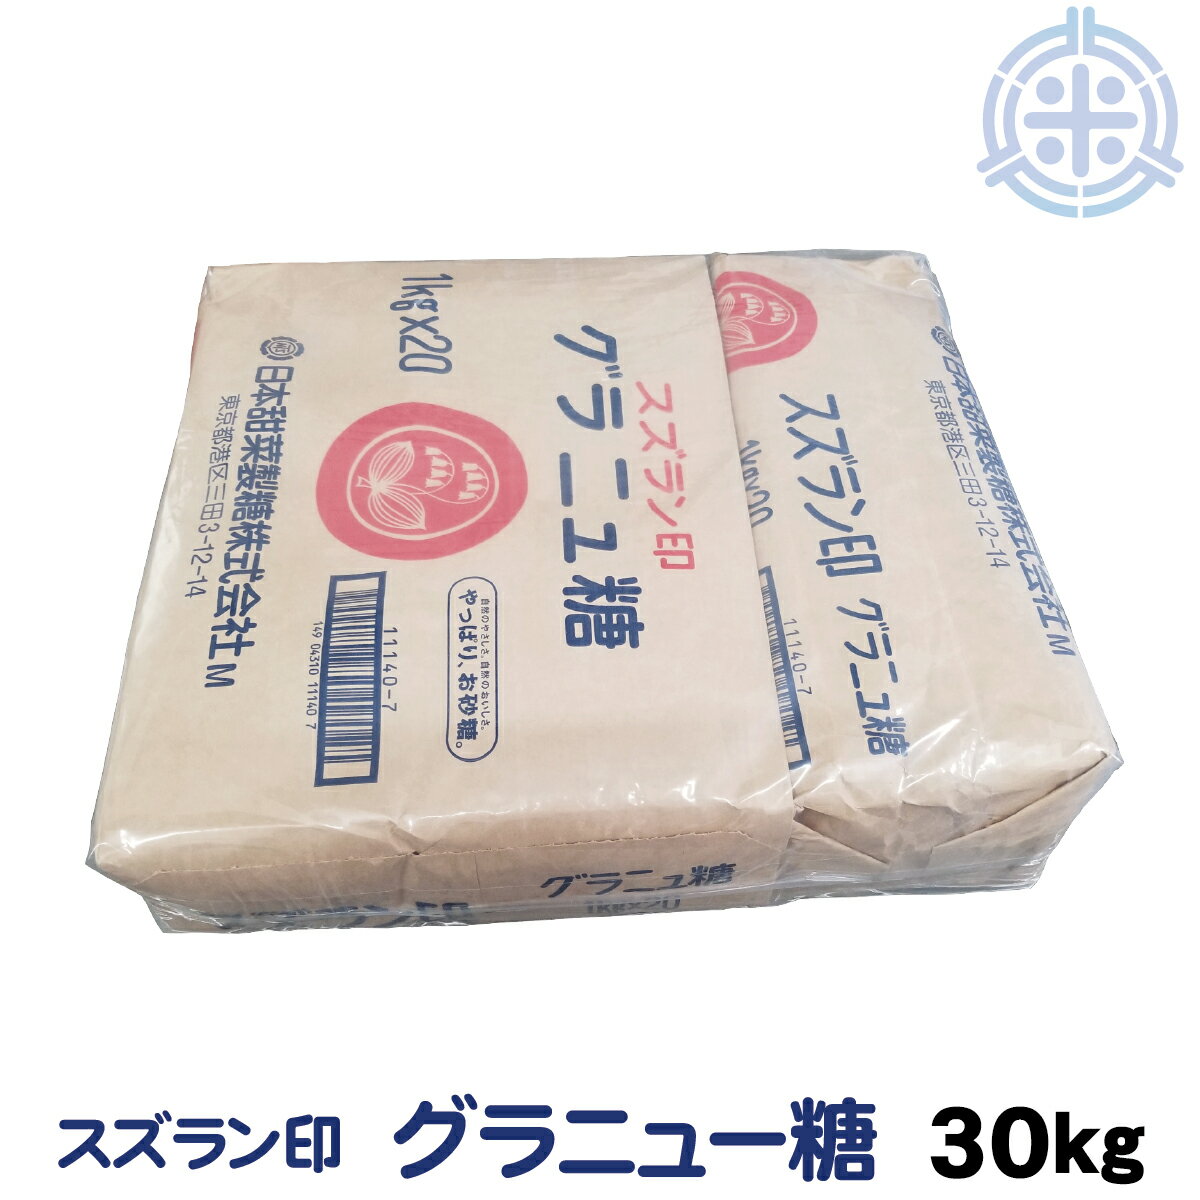 スズラン印 グラニュー糖 てんさい 30kg (1kg×30) ビート糖 甜菜糖 砂糖 北海道産 てんさい糖 日本甜菜製糖 ニッテン　